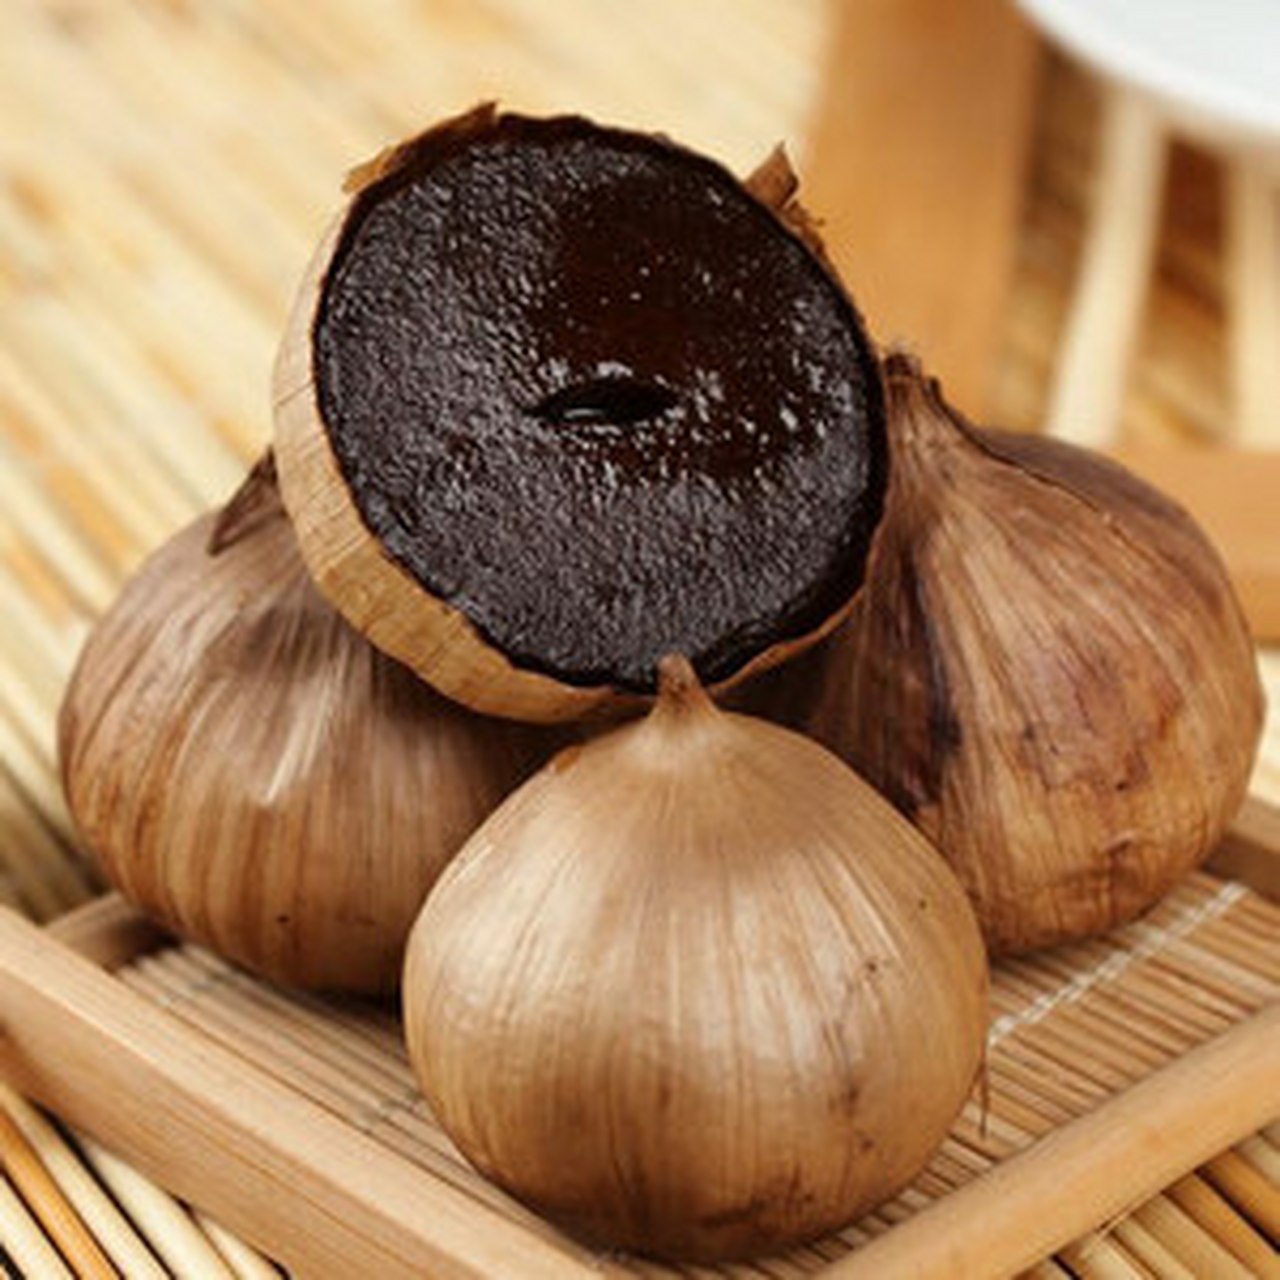 黑蒜是通过特定的加工工艺将新鲜的大蒜在特定的温度和湿度下进行发酵